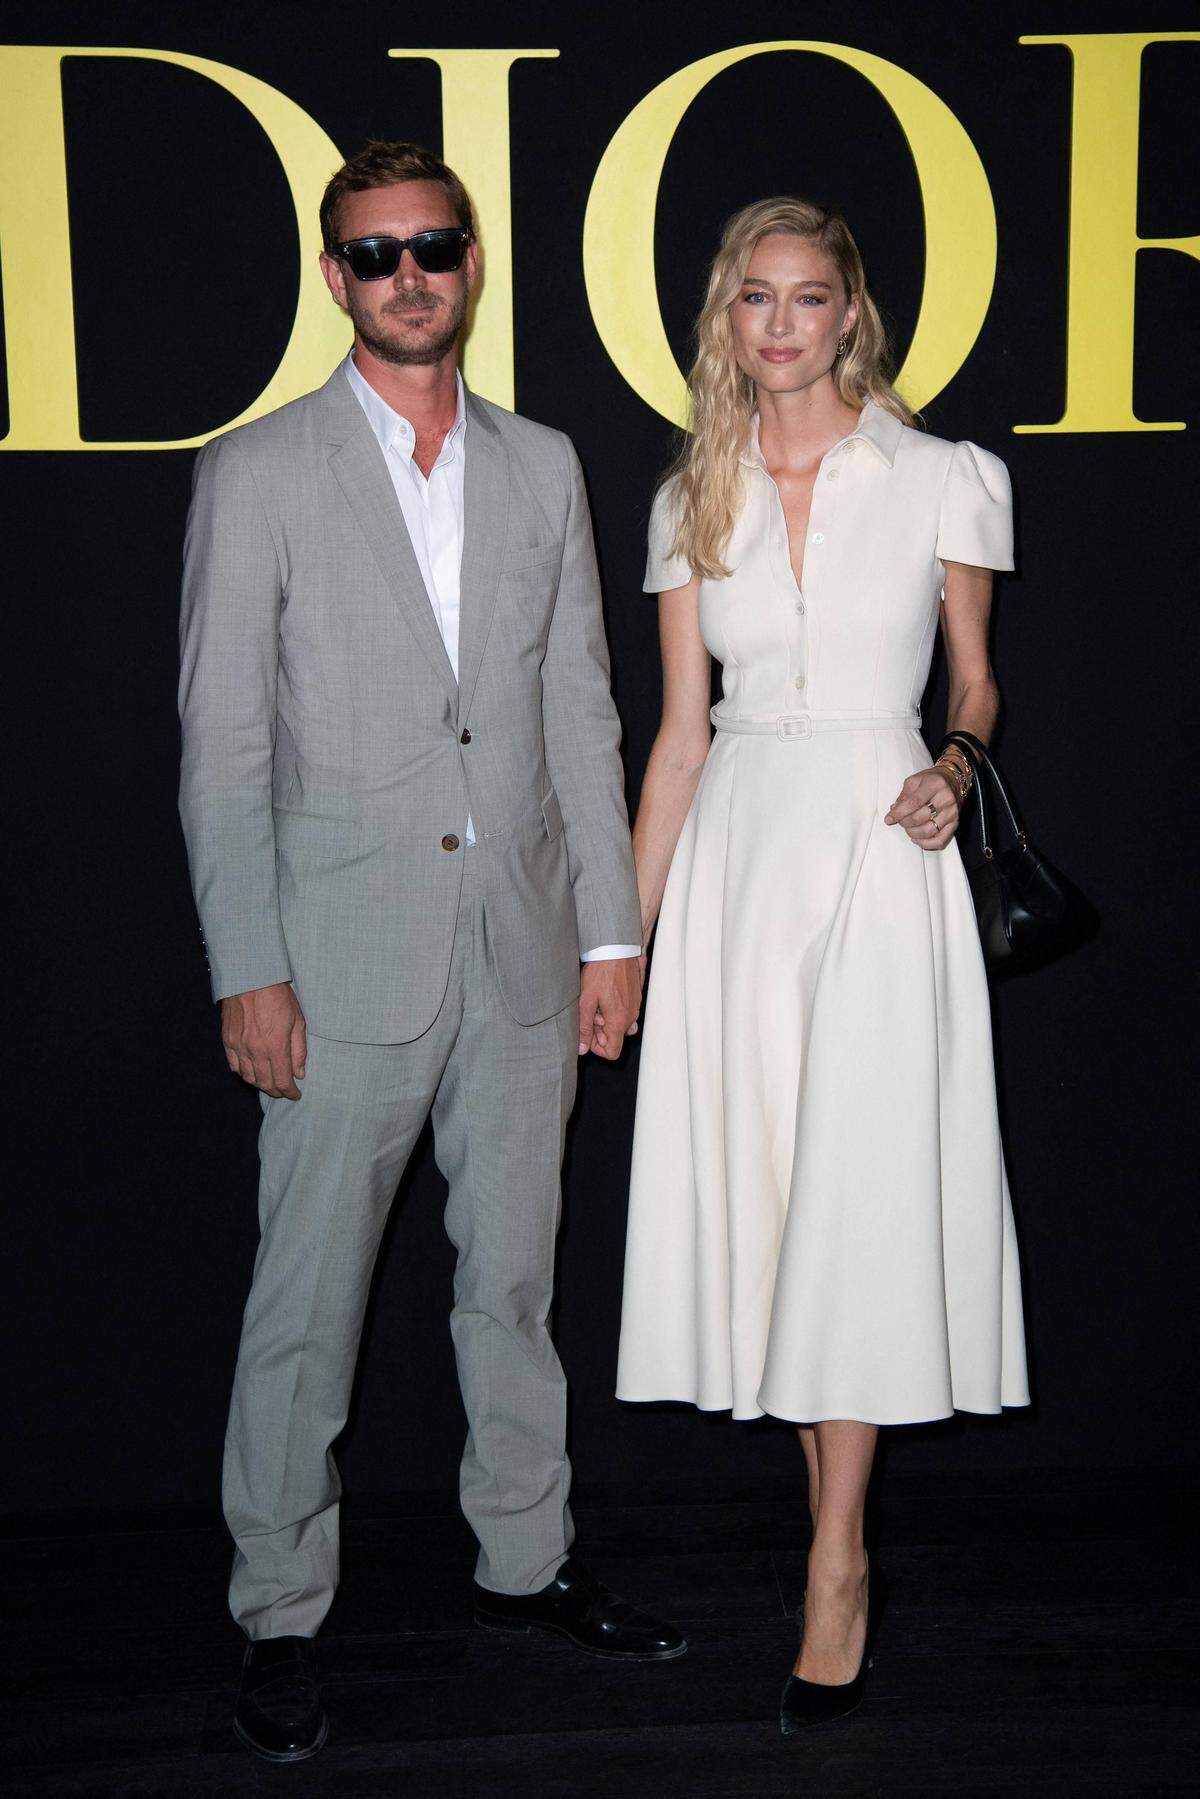 Für die Show von Dior in Paris interessierten sich auch die Royals aus Monaco: Pierre Casiraghi erschien mit Ehefrau Beatrice Borromeo.